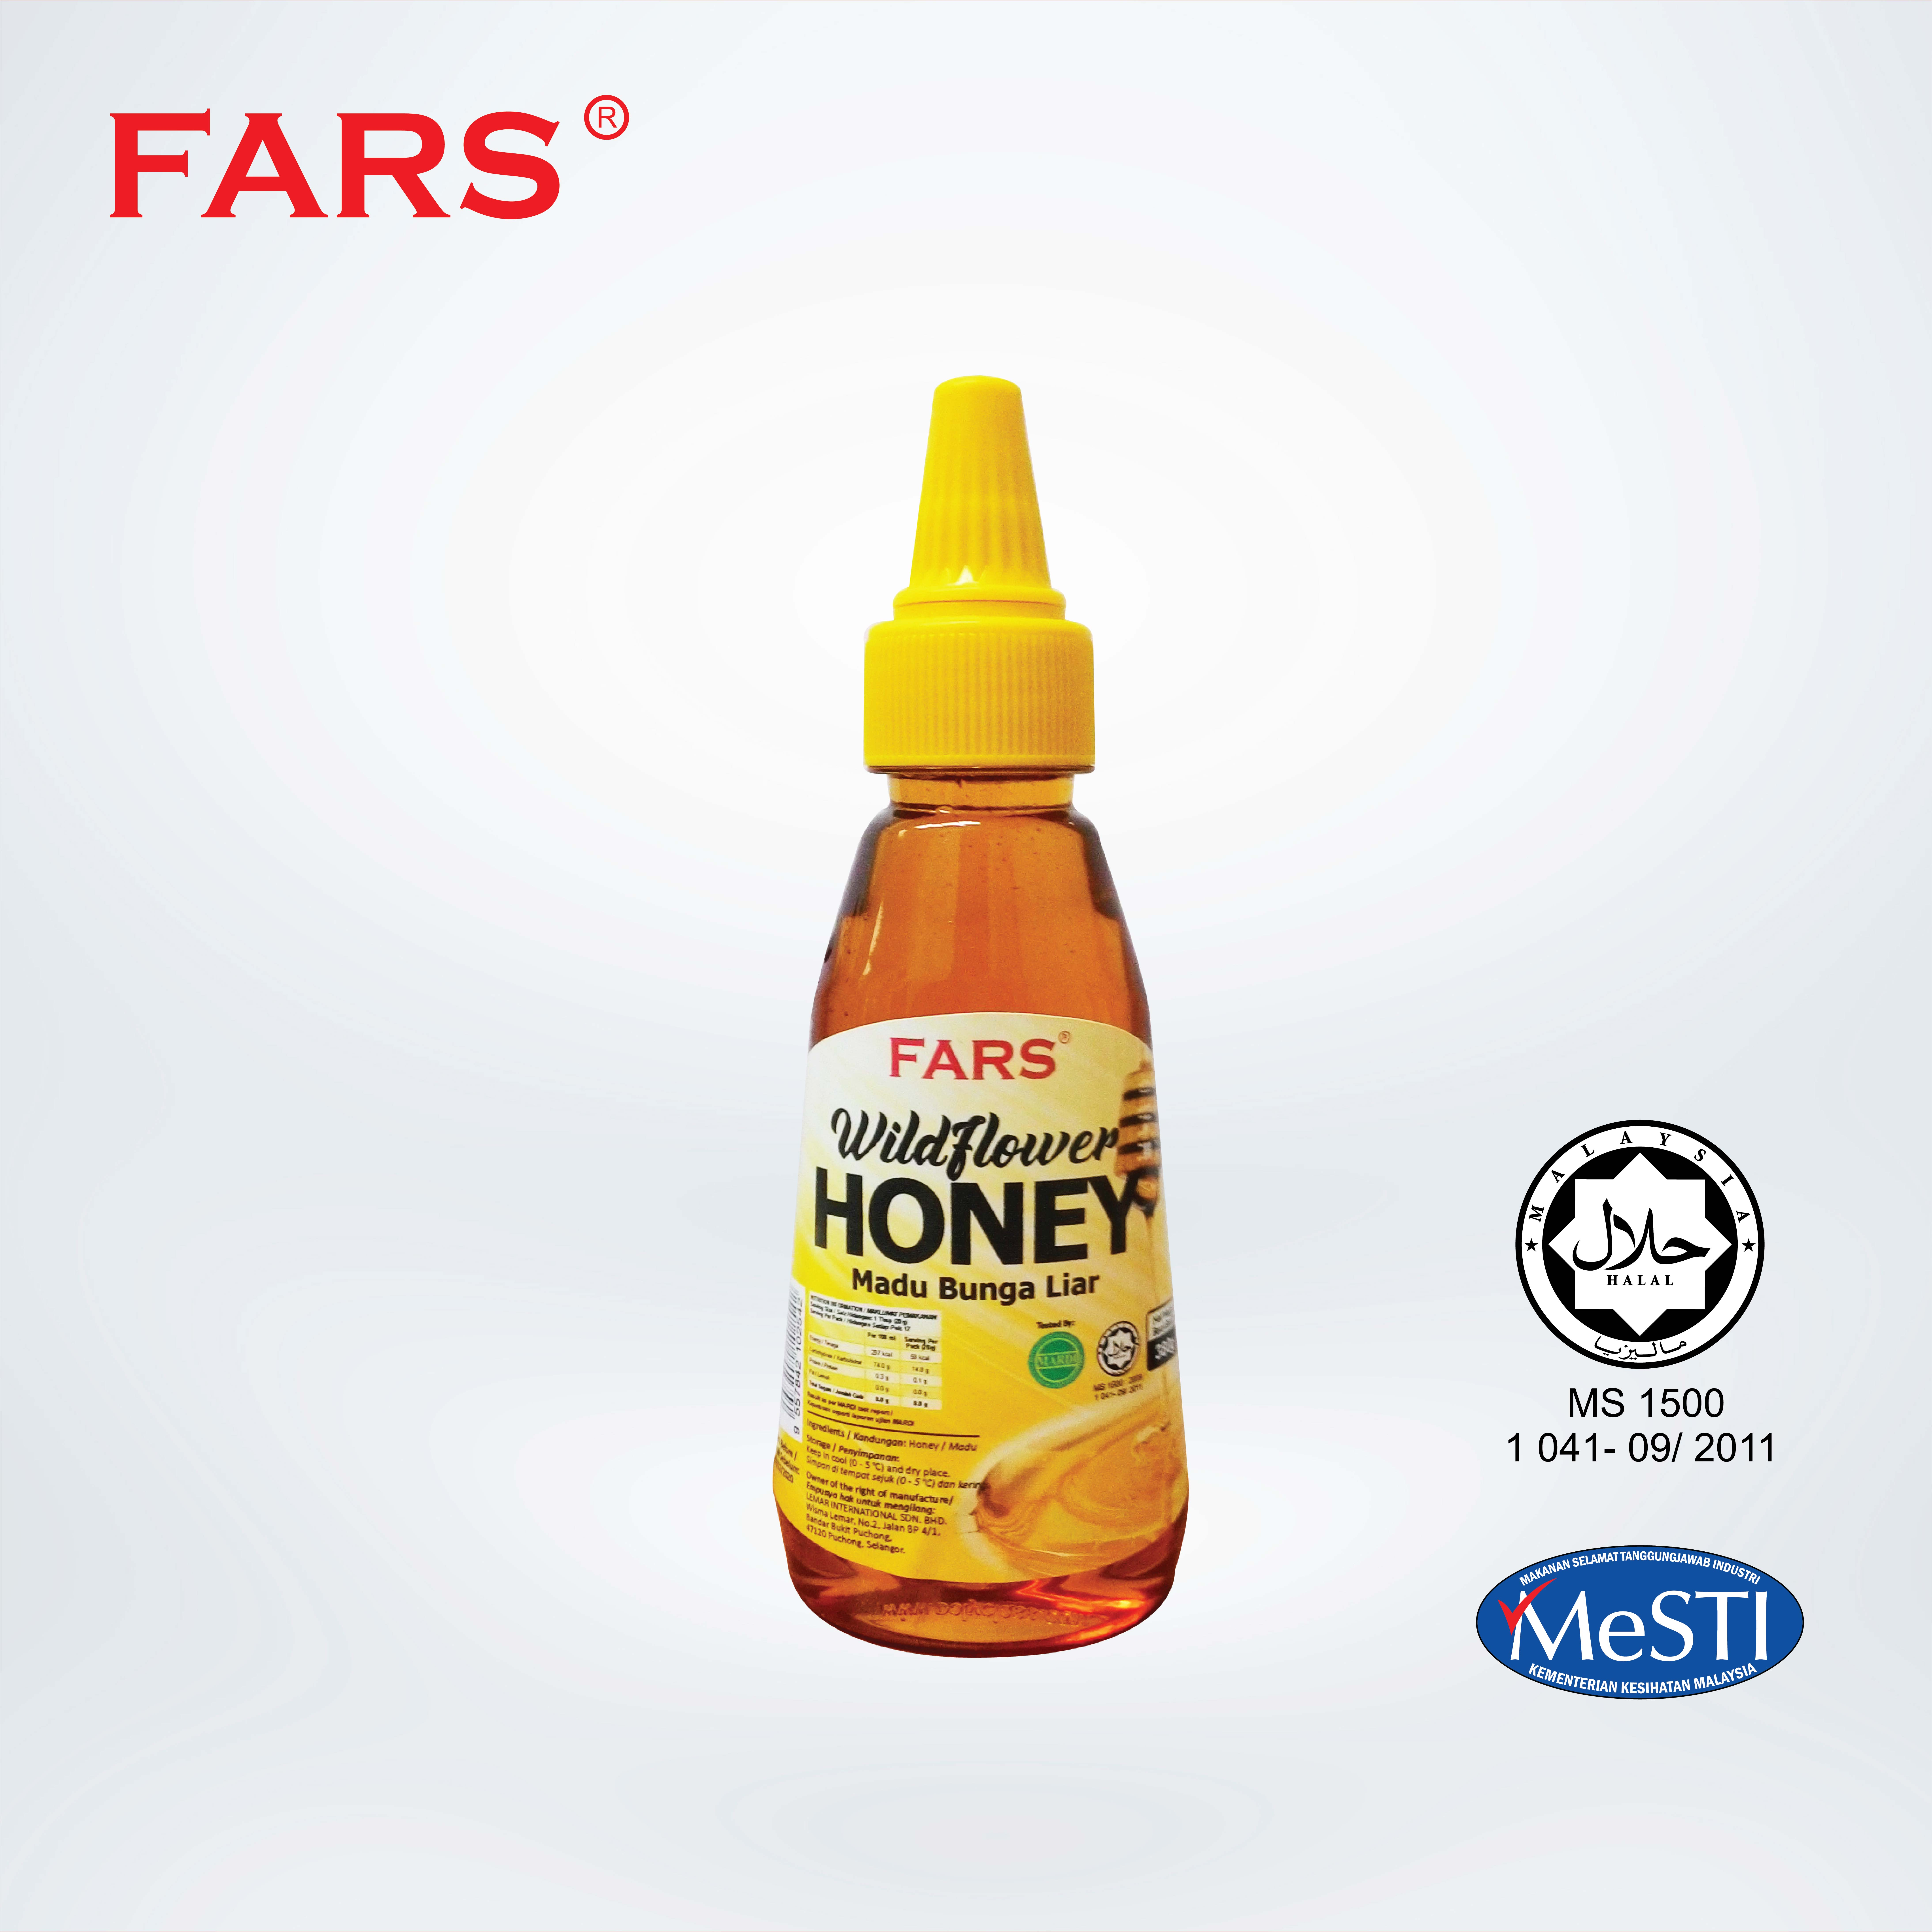 Fars Wildflower Honey 380g